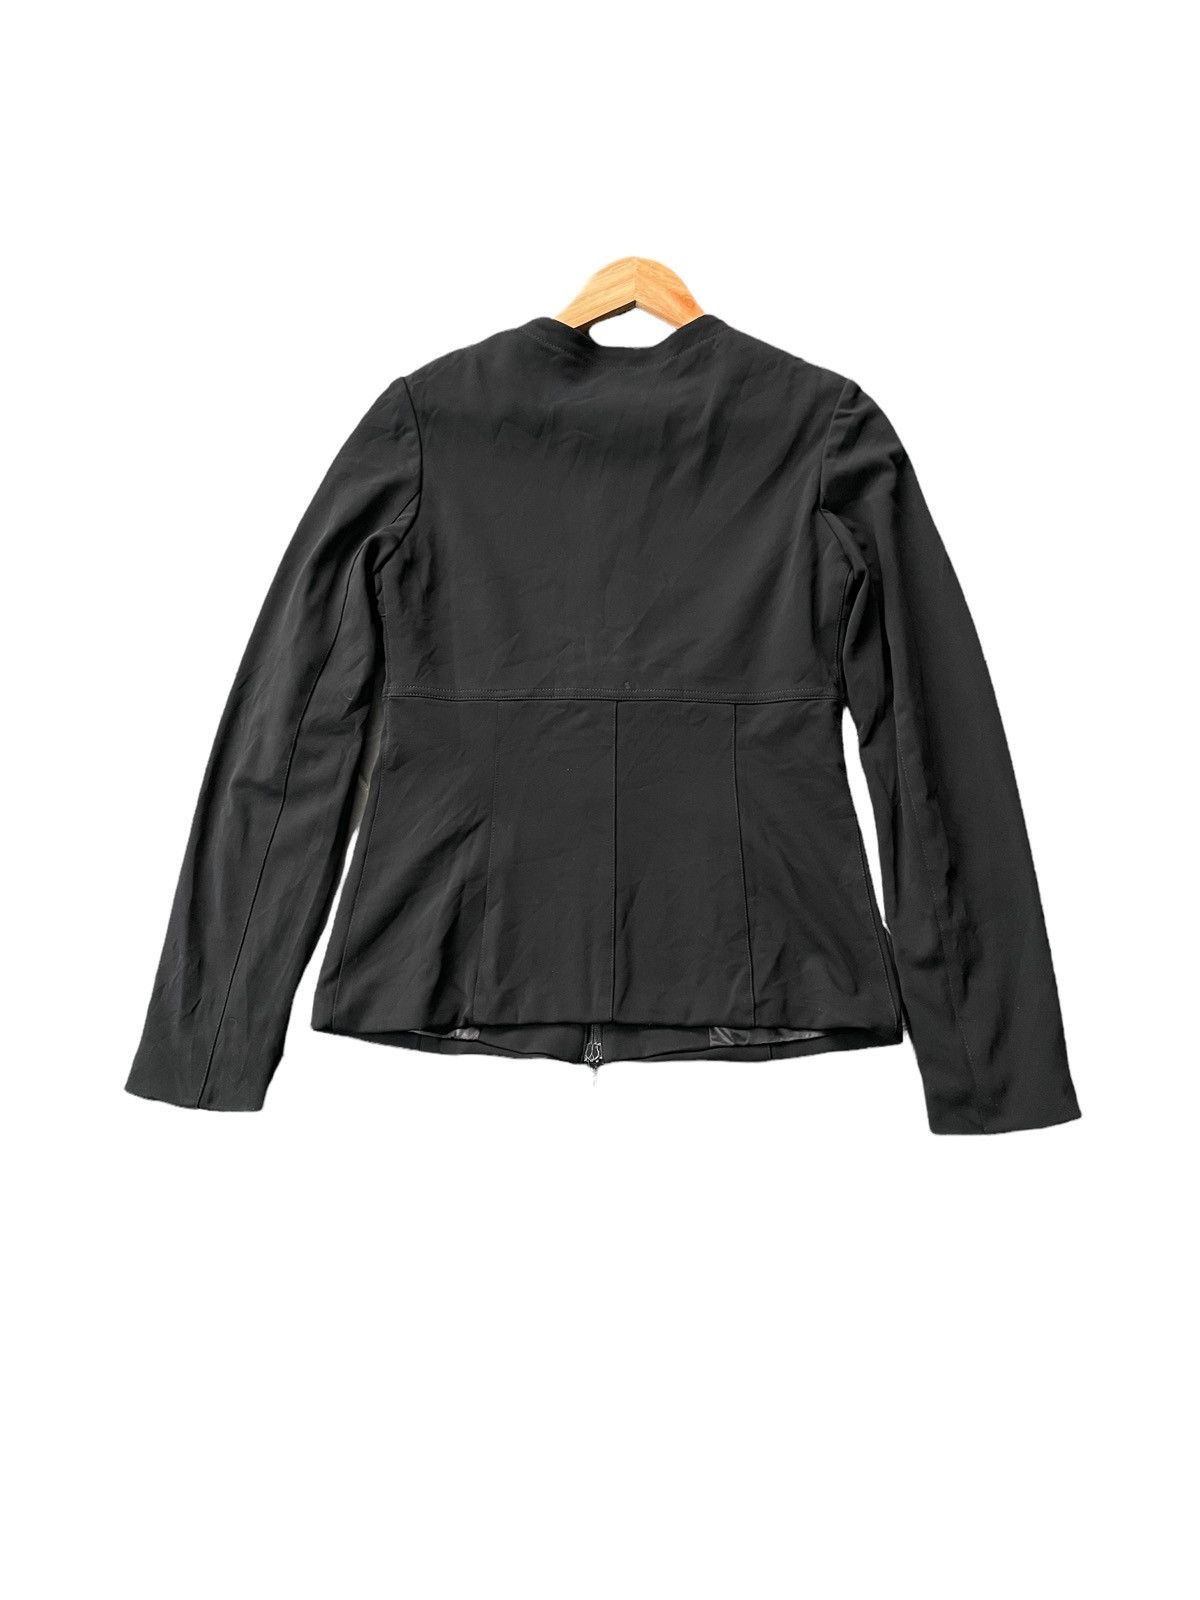 Vintage 🔥STEALS🔥Plein Sud Faycal Amor Paris Jacket Size US S / EU 44-46 / 1 - 9 Thumbnail